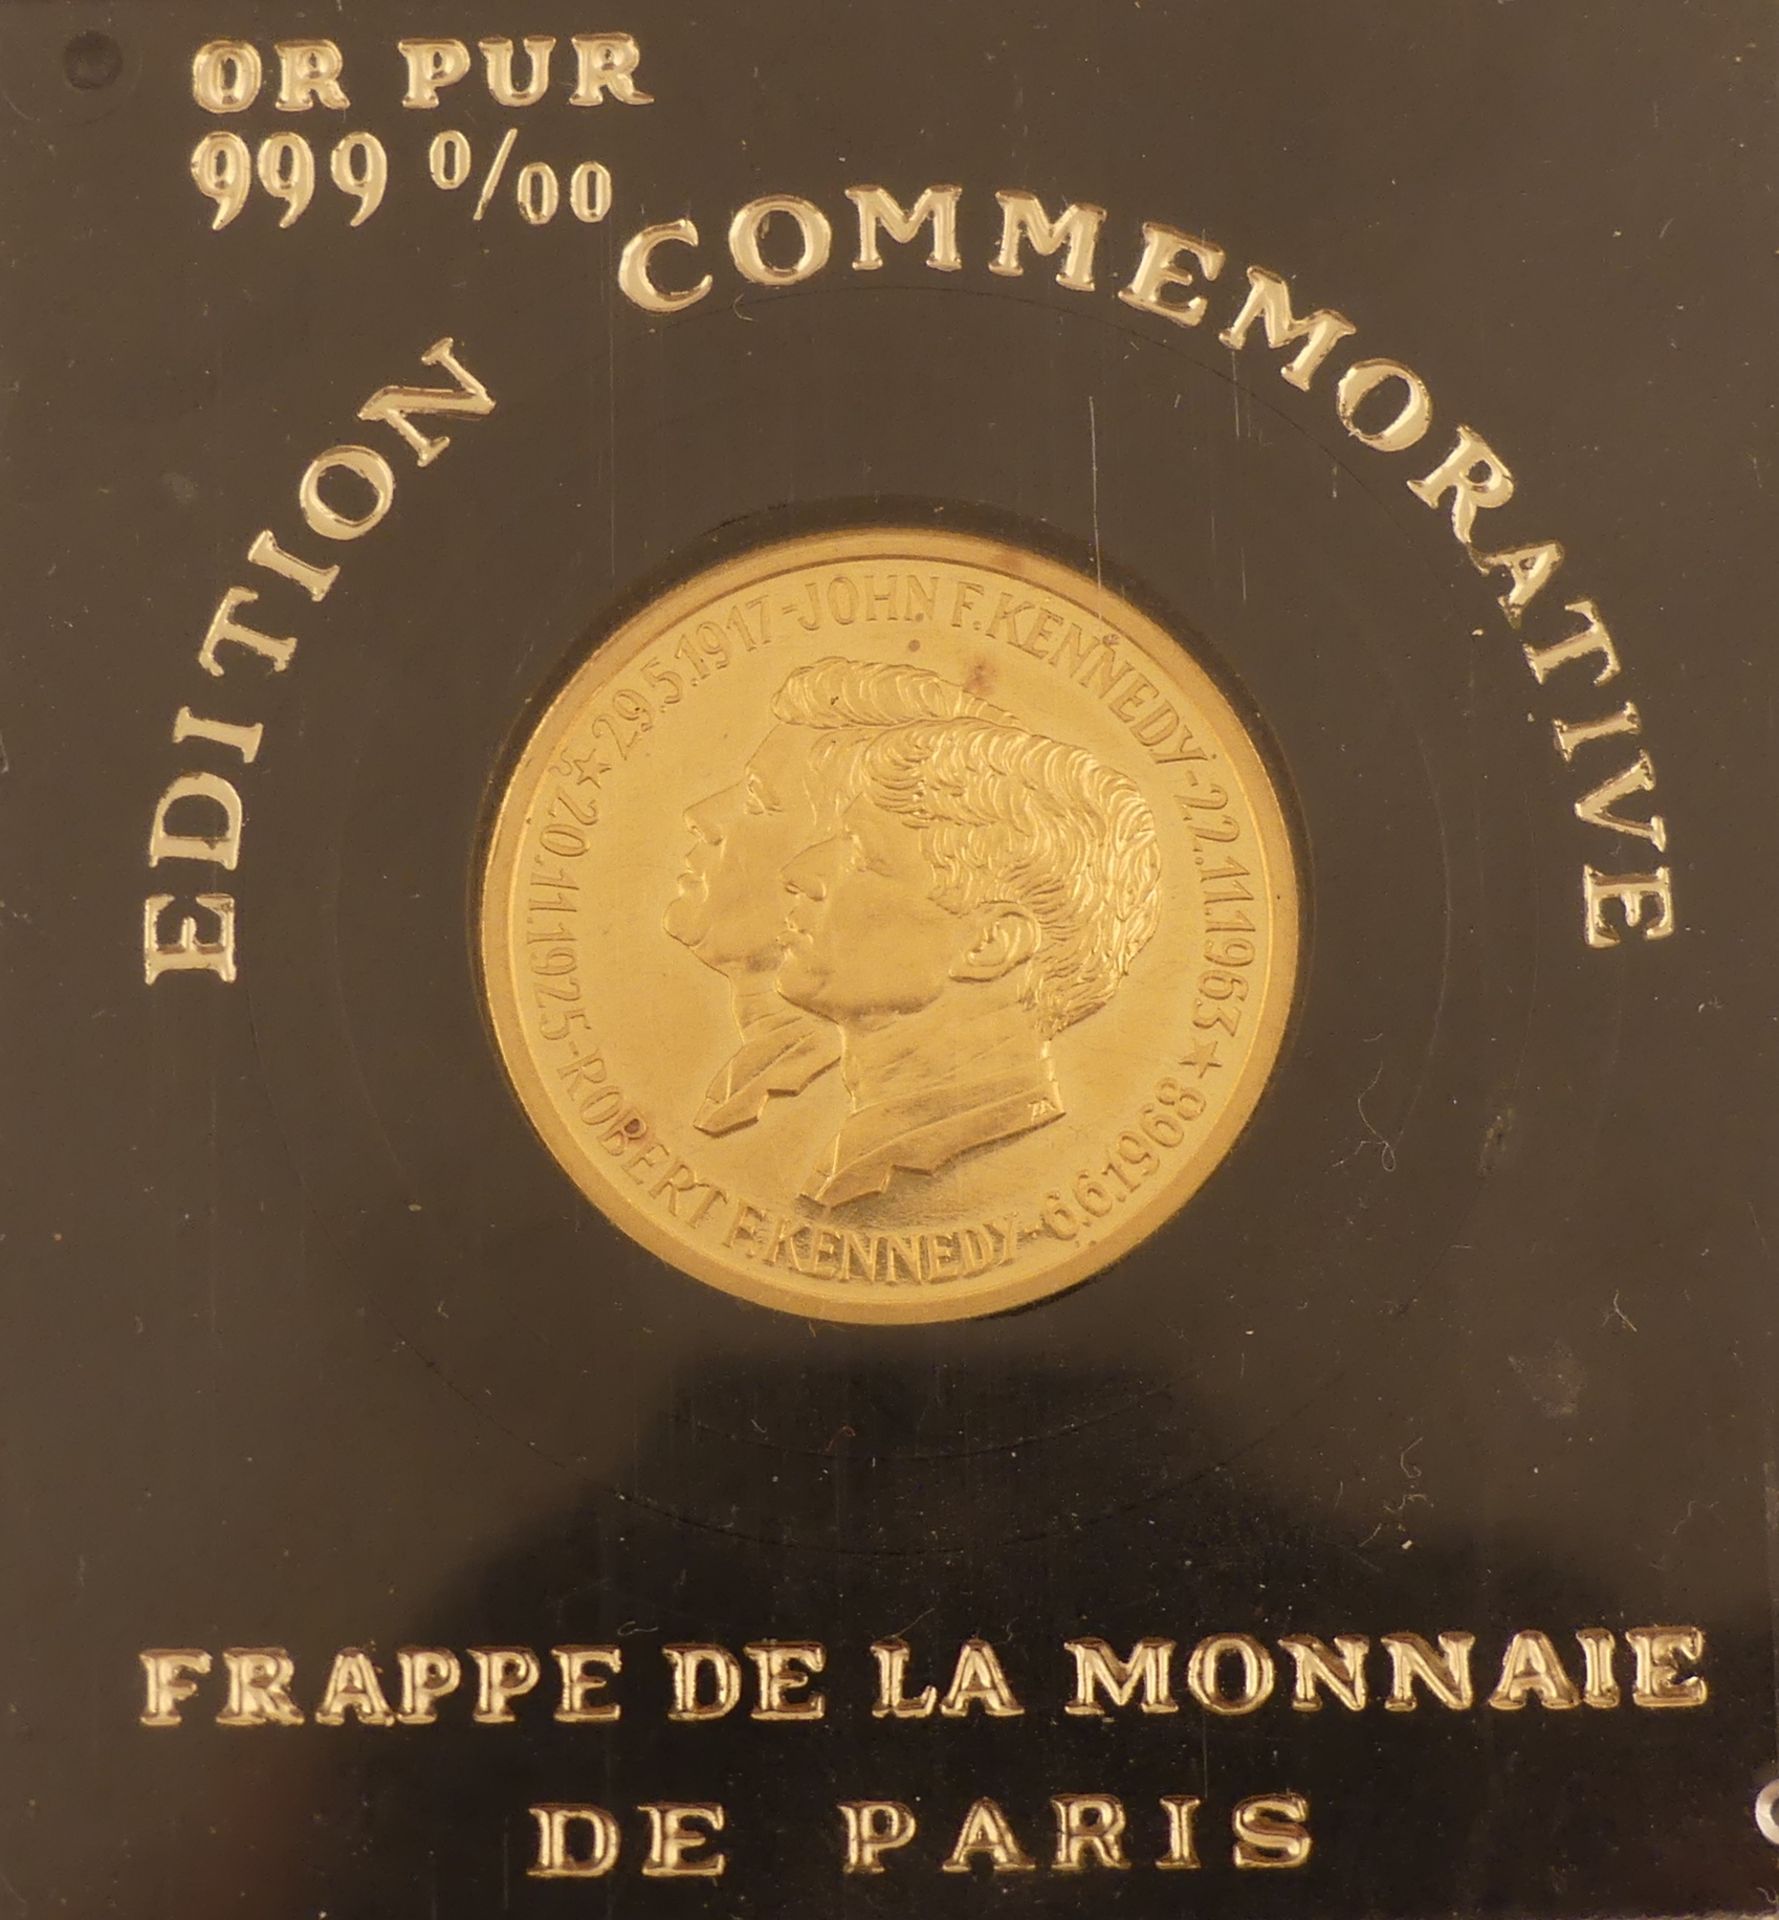 Médaille en or 999 0/00 aux effigies de John et Robert Kennedy. Monnaie de Paris. [...] - Bild 3 aus 4